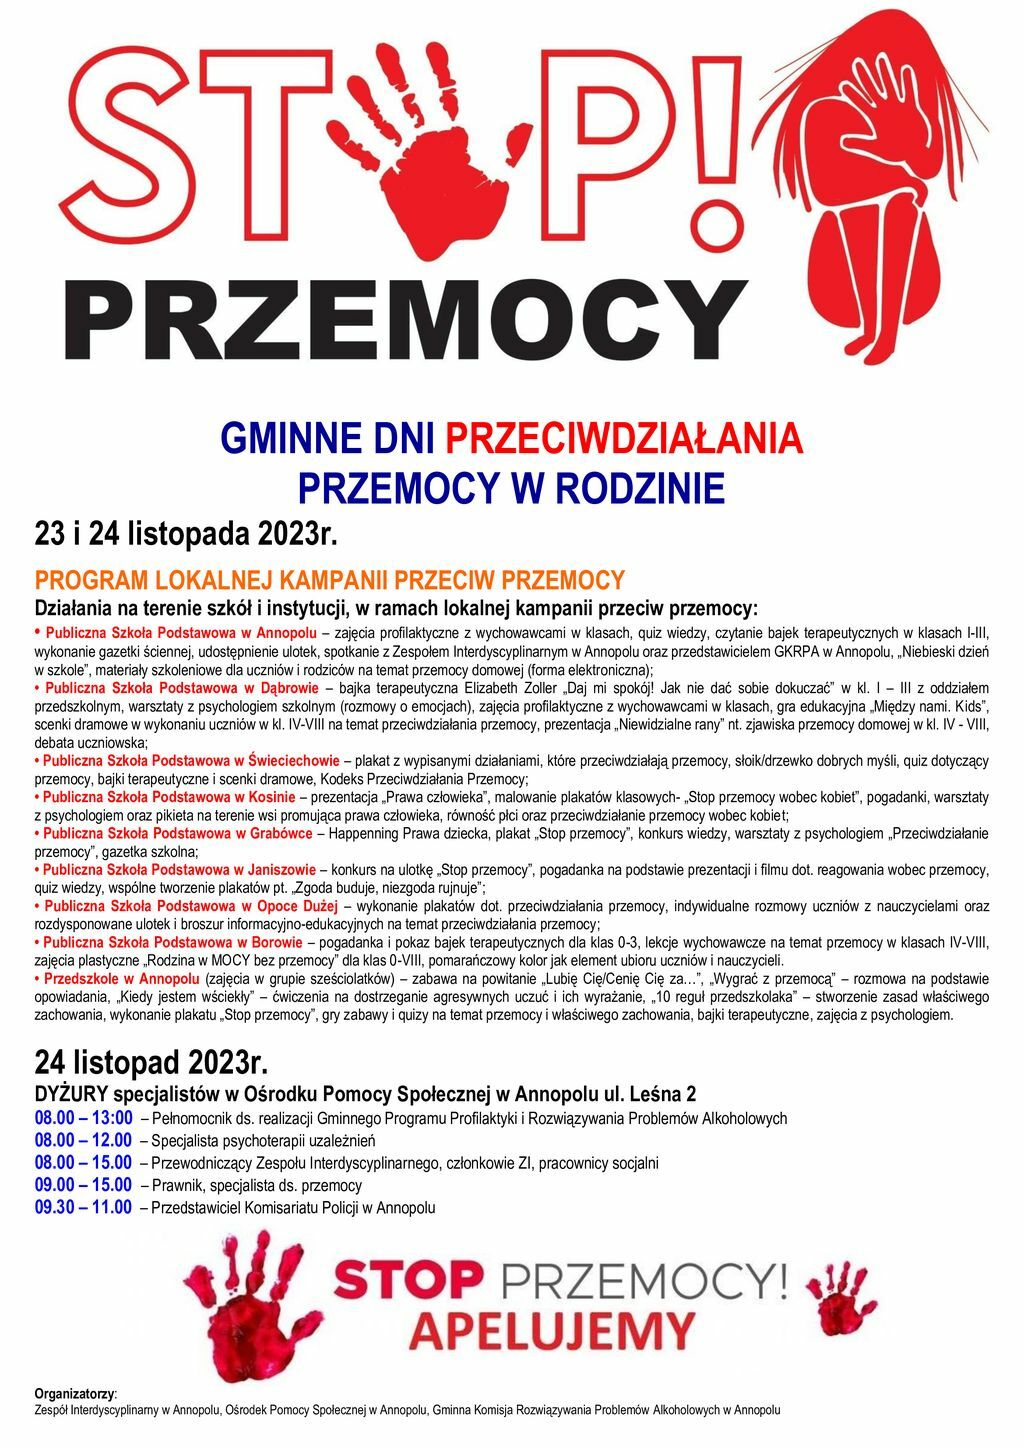 Obraz przedstawia plakat informacyjny o "Gminnych Dniach Przeciwdziałania Przemocy w Rodzinie", z datą, programem wydarzeń, i logotypami organizatorów.